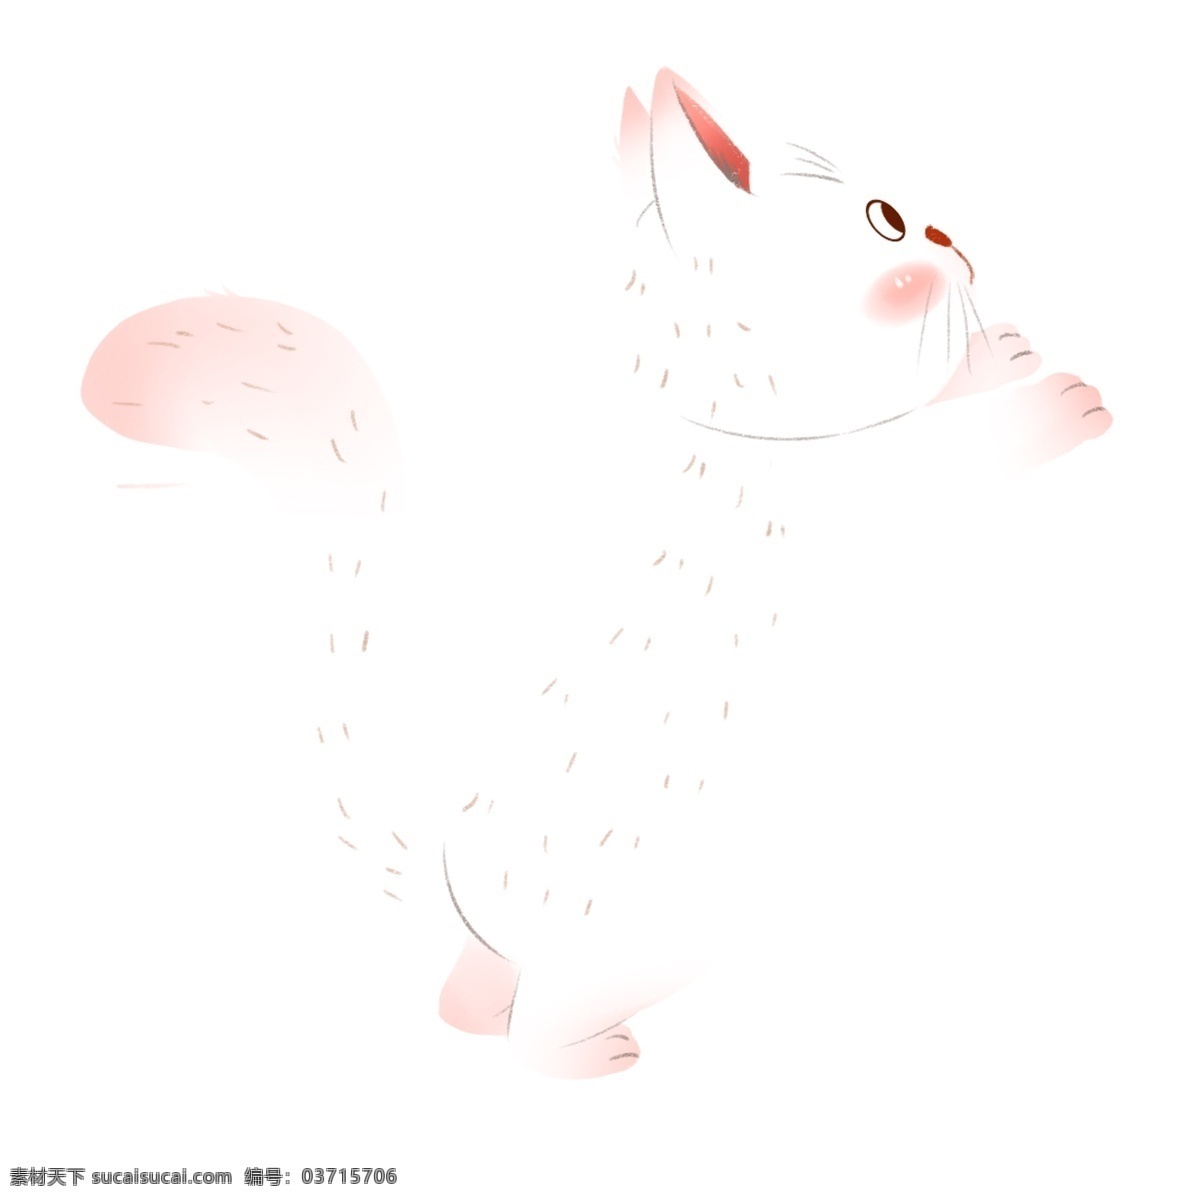 粉白色 可爱 动物 小 猫咪 猫猫 卡通 彩色 水彩 创意 手绘 绘画元素 现代 简约 装饰 图案